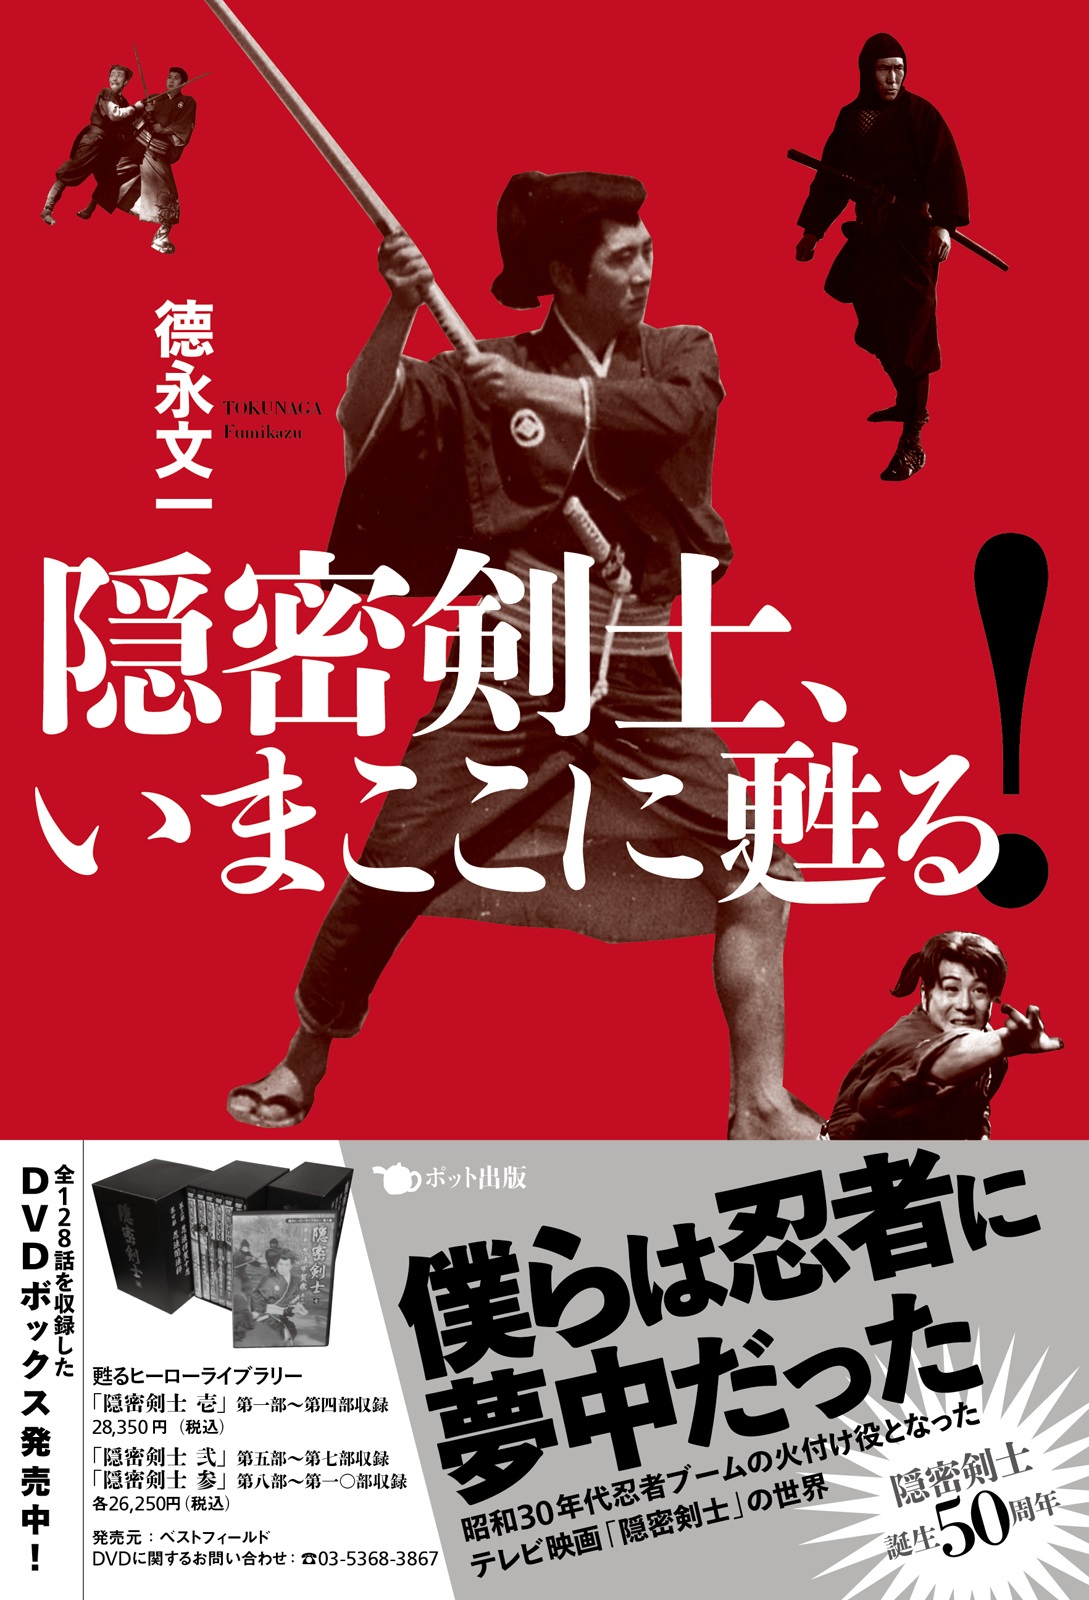 甦るヒーローライブラリー「隠密剣士 参」DVD-BOX www.krzysztofbialy.com